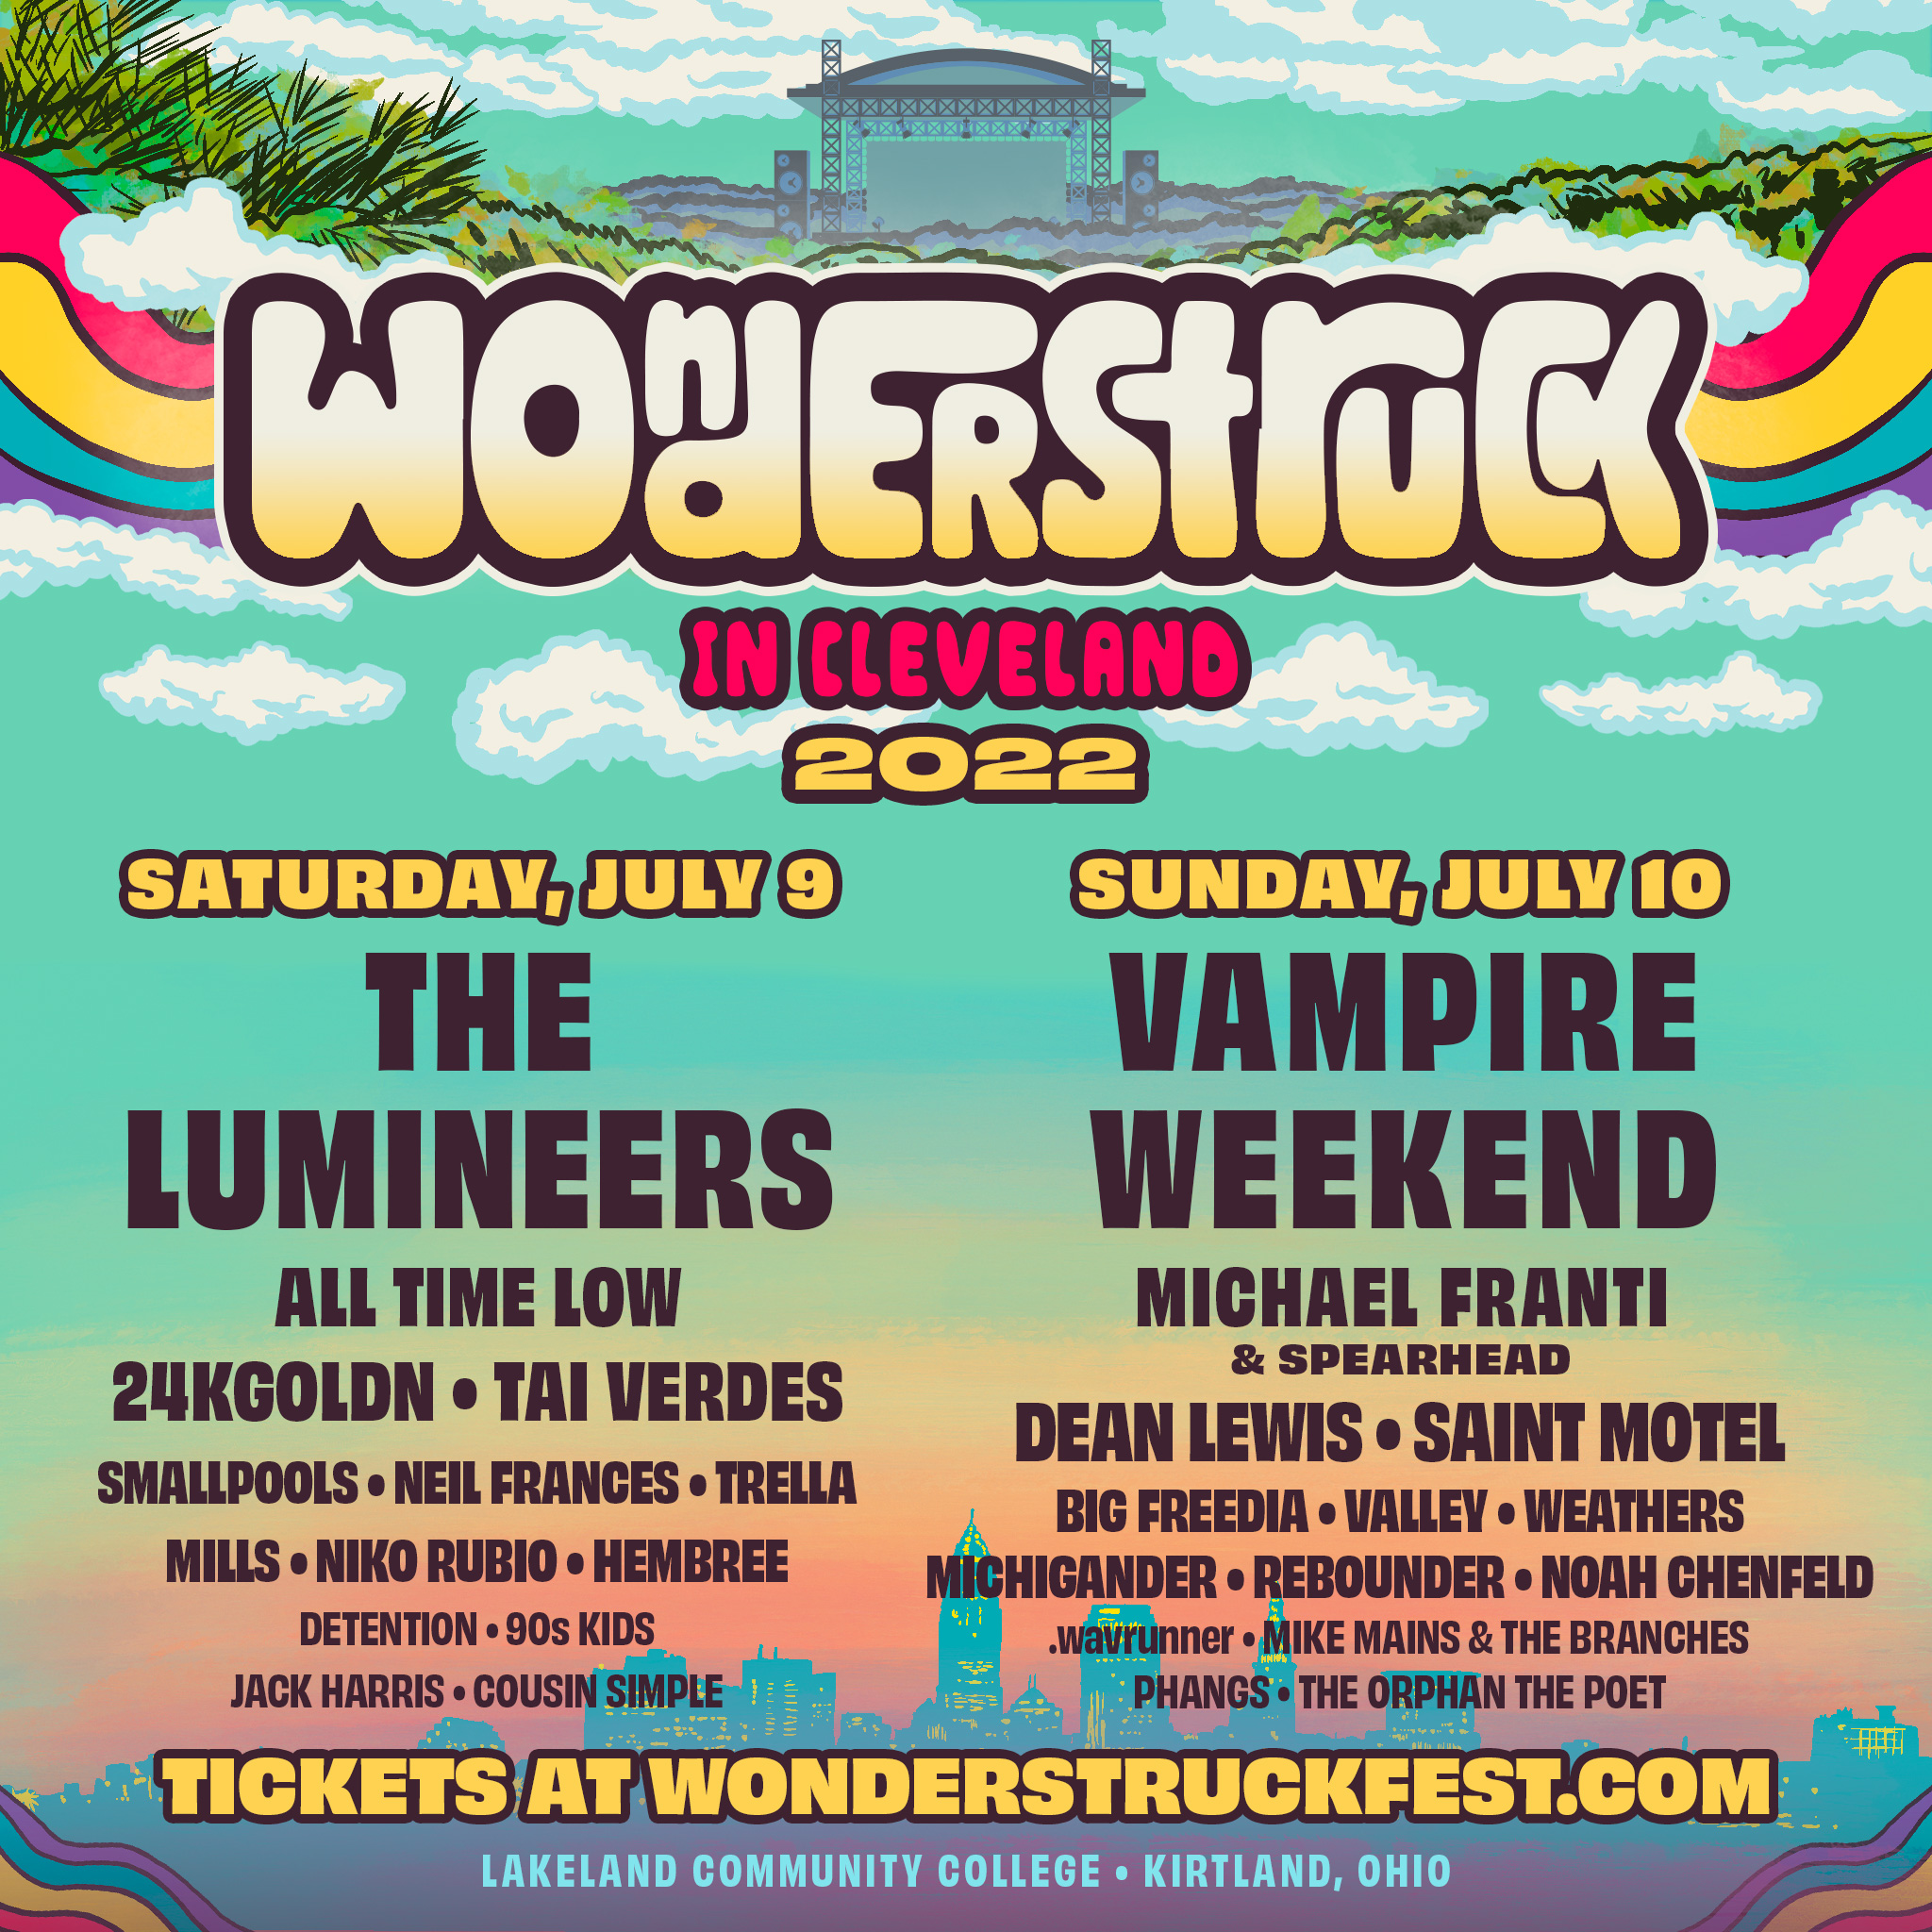 Buy Tickets to WonderStruck In Cleveland in Kirtland on Jul 09, 2022